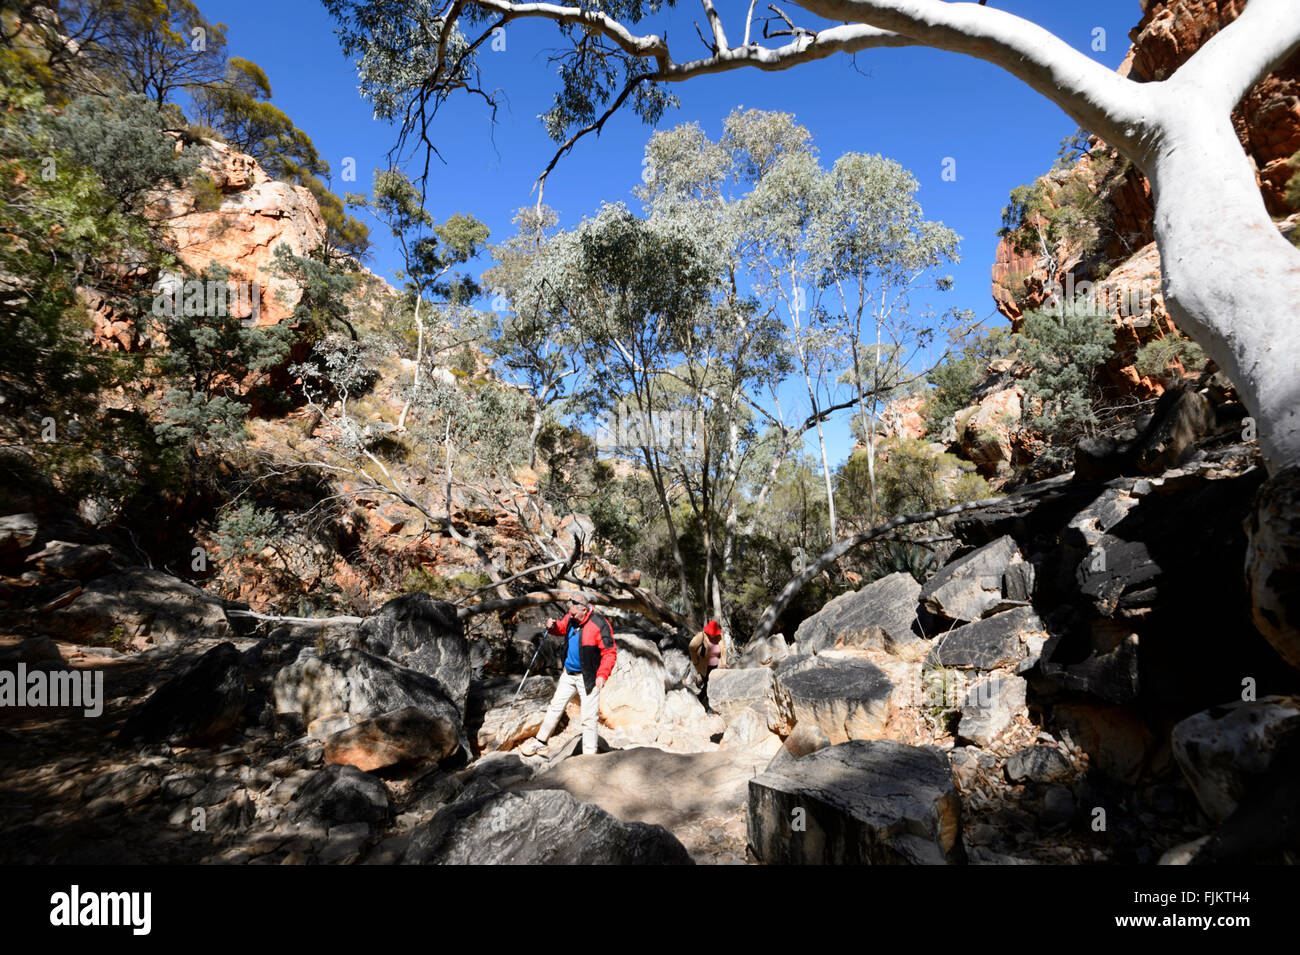 Standley Chasm, West MacDonnell Ranges, Territoire du Nord, NT, Australie Banque D'Images